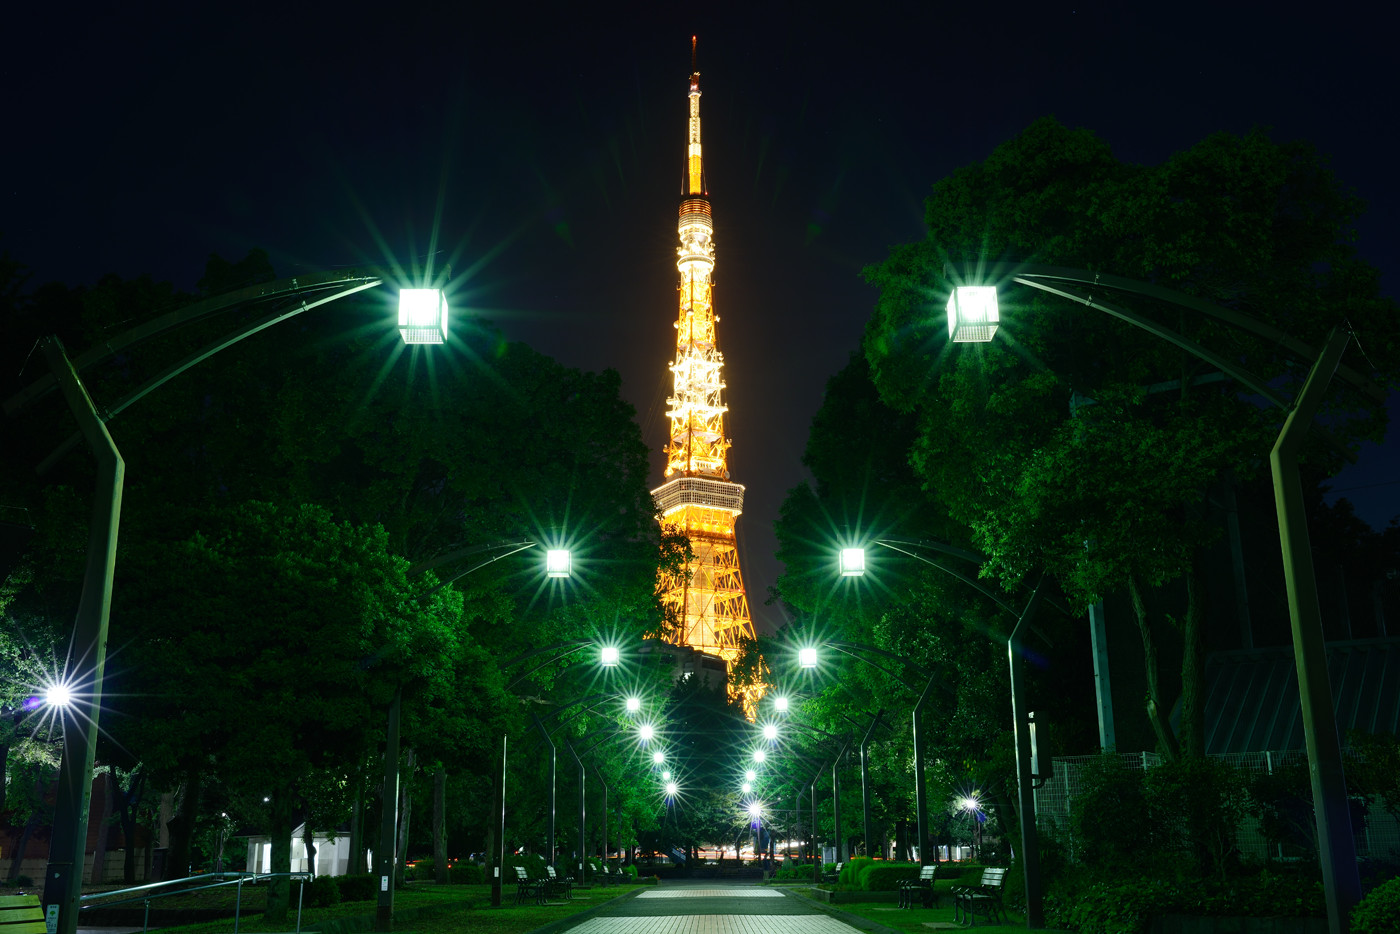 54階の高層ビルの屋上から見えるさまざまな光を意識しつつ、東京タワーの形が最も良く見えるアングルをさらに探る。